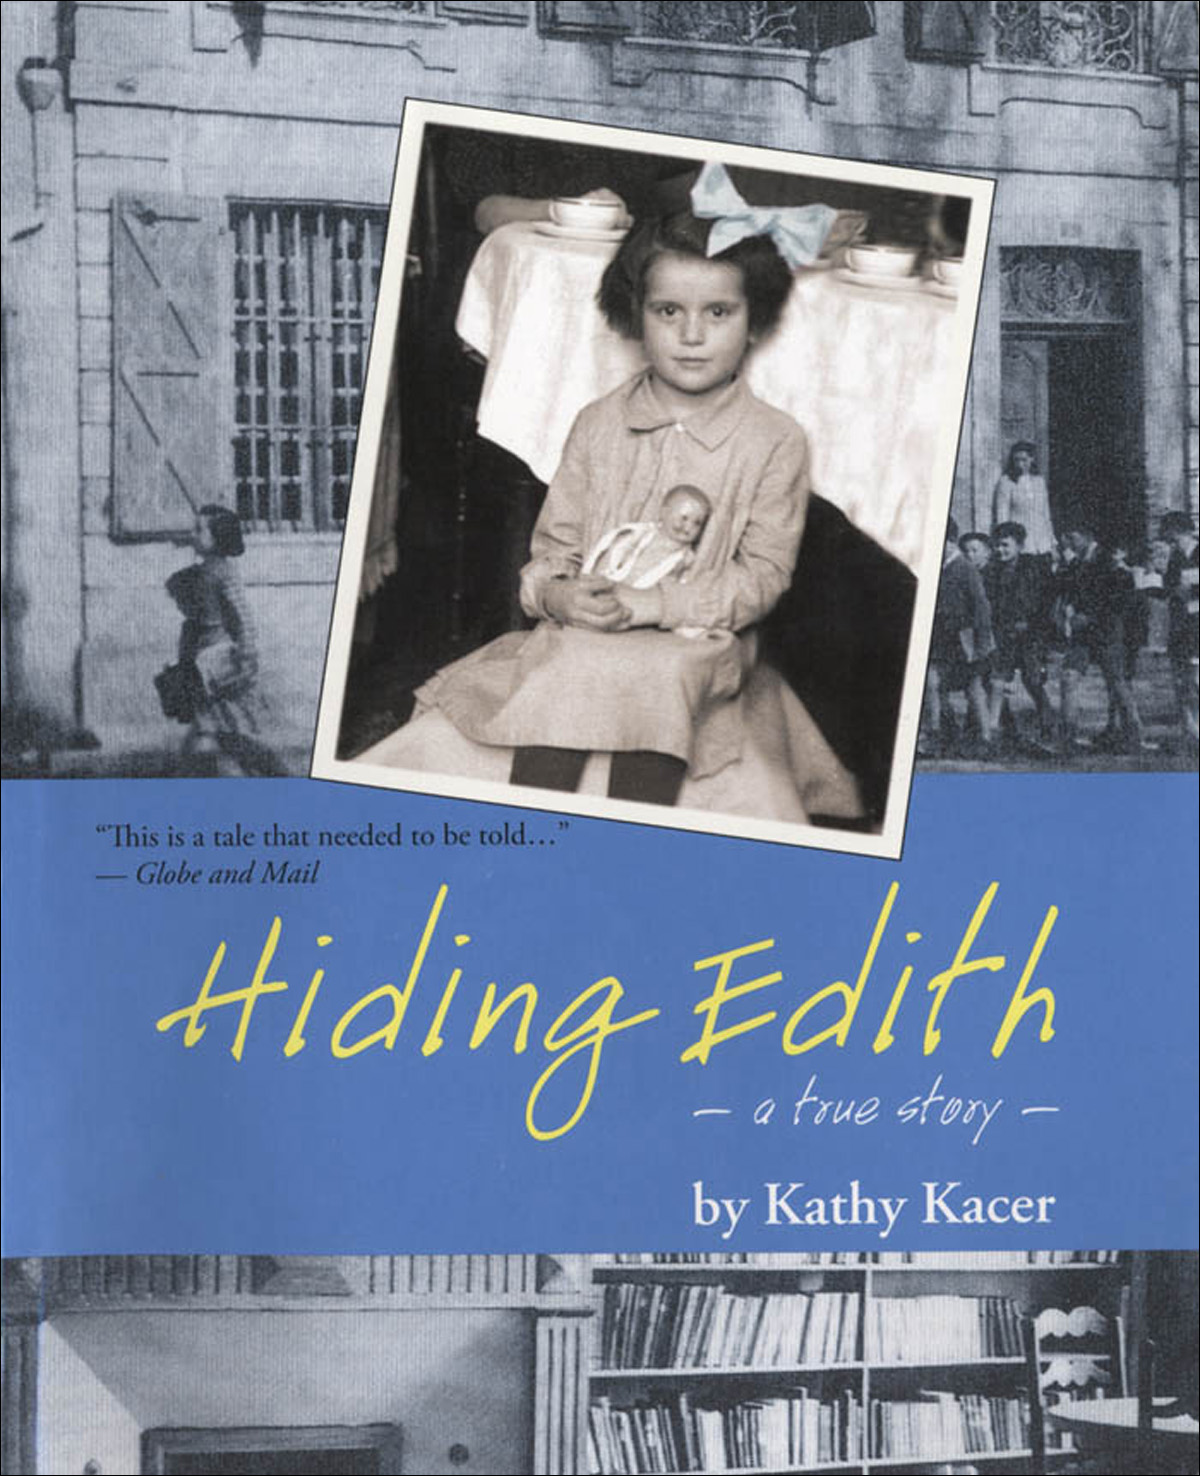 Hiding Edith by Kathy Kacer